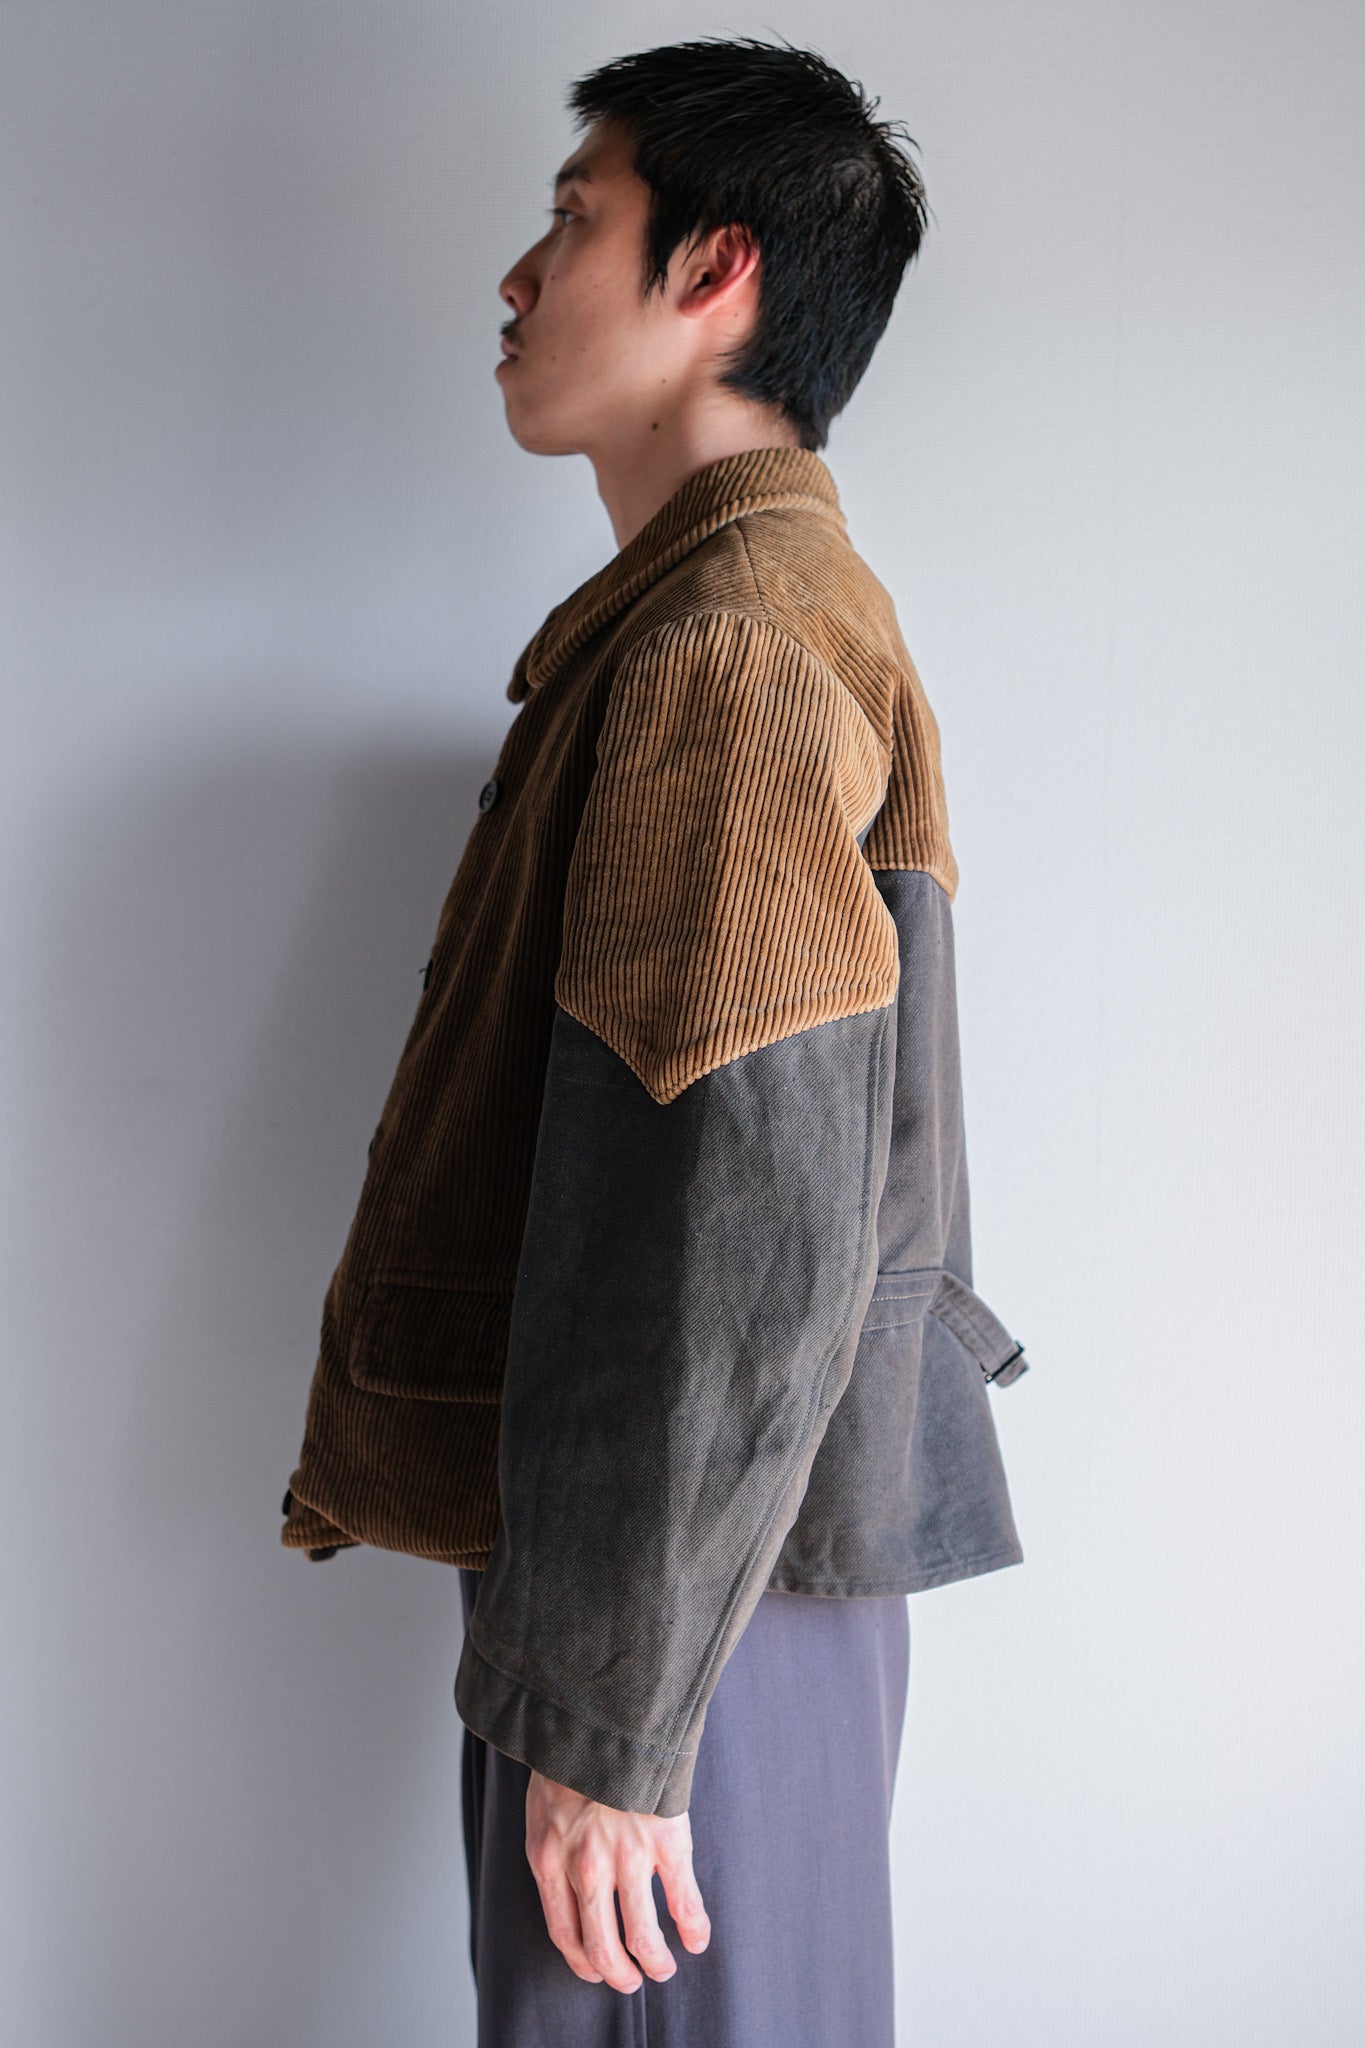 [〜50年代]比利時復古棕色燈芯絨雙胸部工作夾克